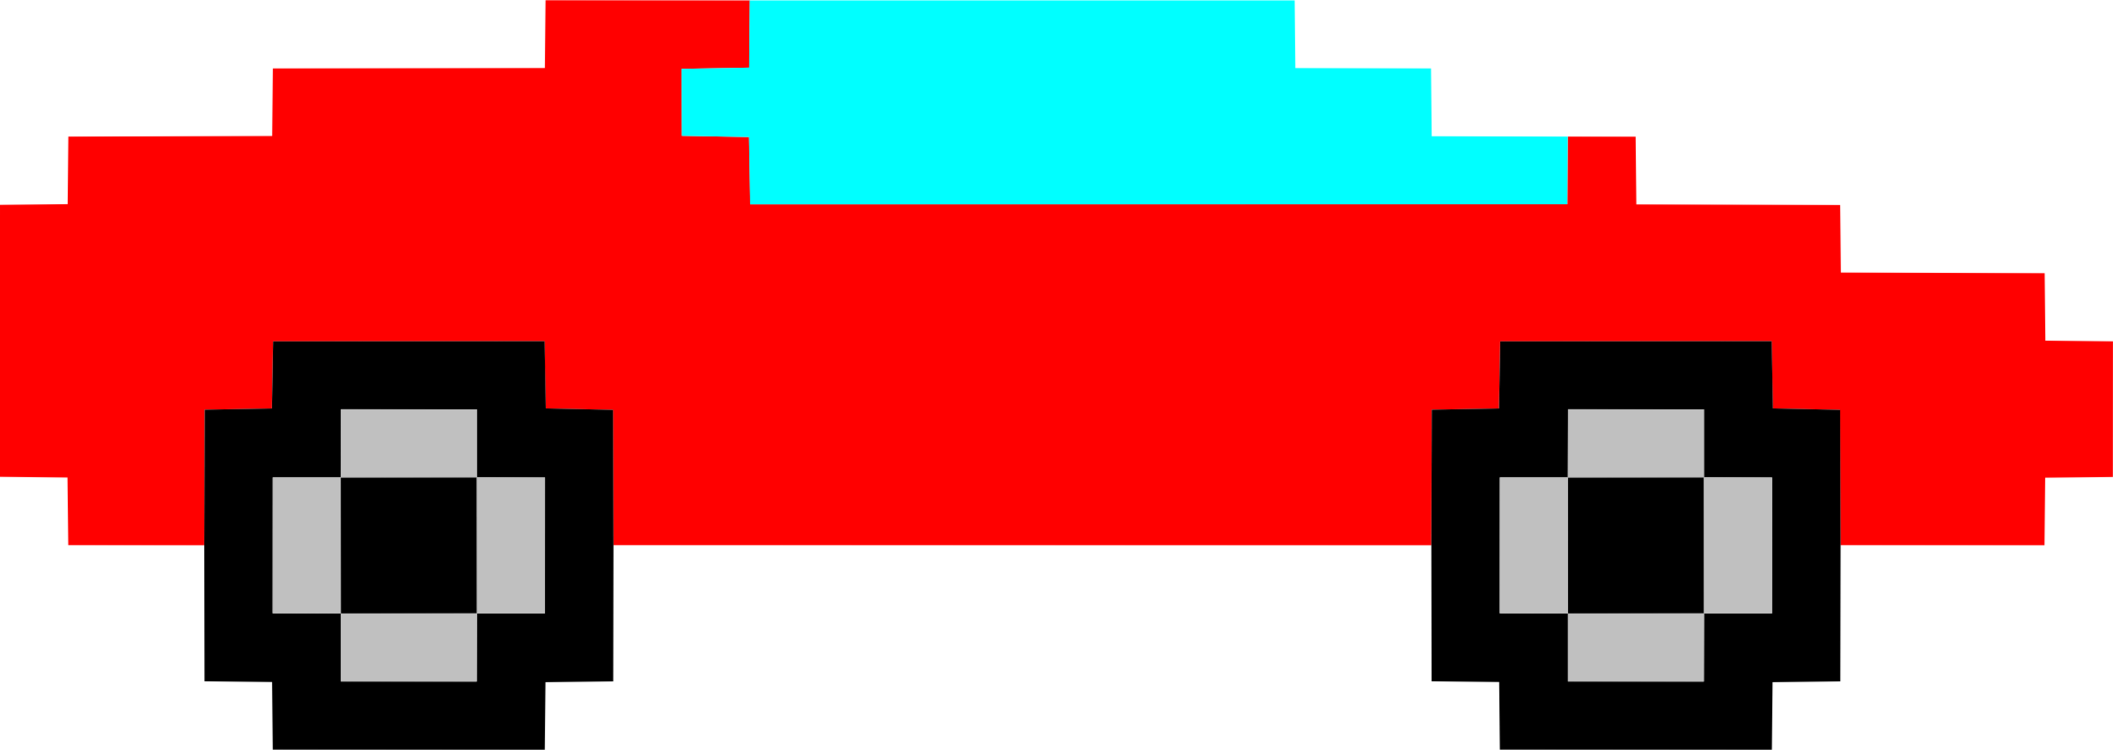 Car Pixel Art Drawing Pixelation - Logo Pixel Art Car Clipart (2113x750), Png Download